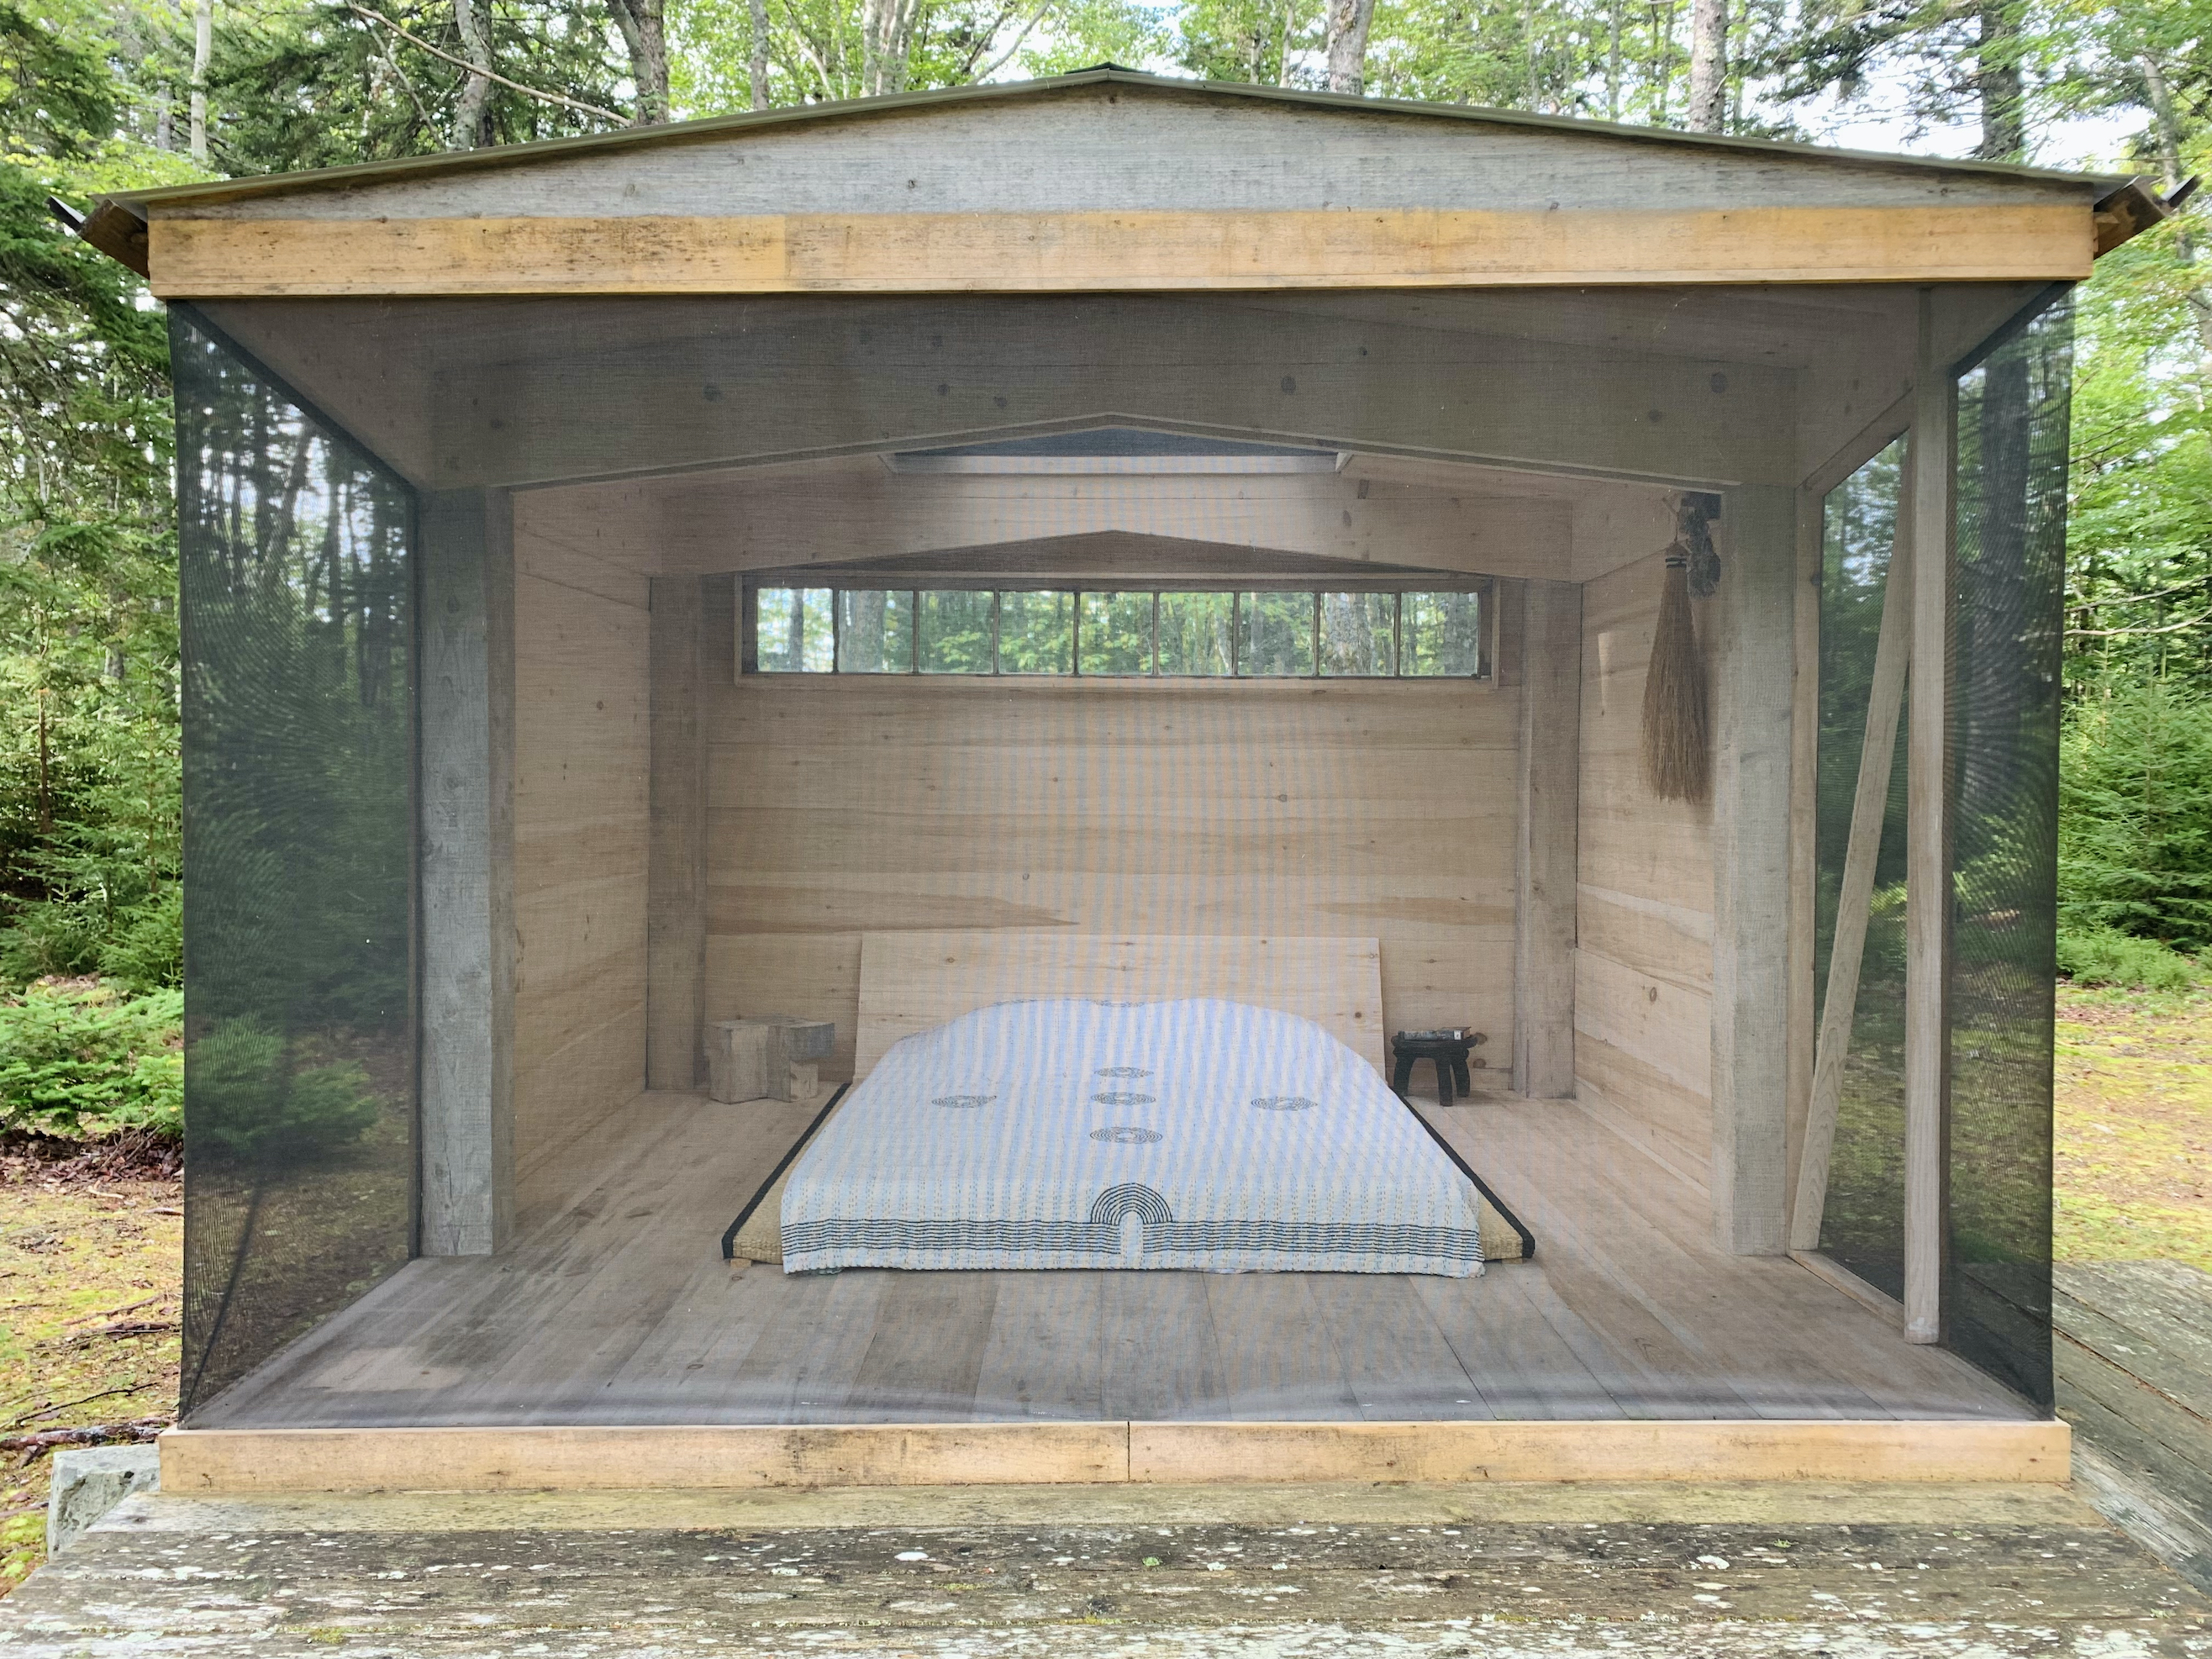 Extra Bedroom: Designer Brendan Ravenhill's Sleeping Porch in Maine